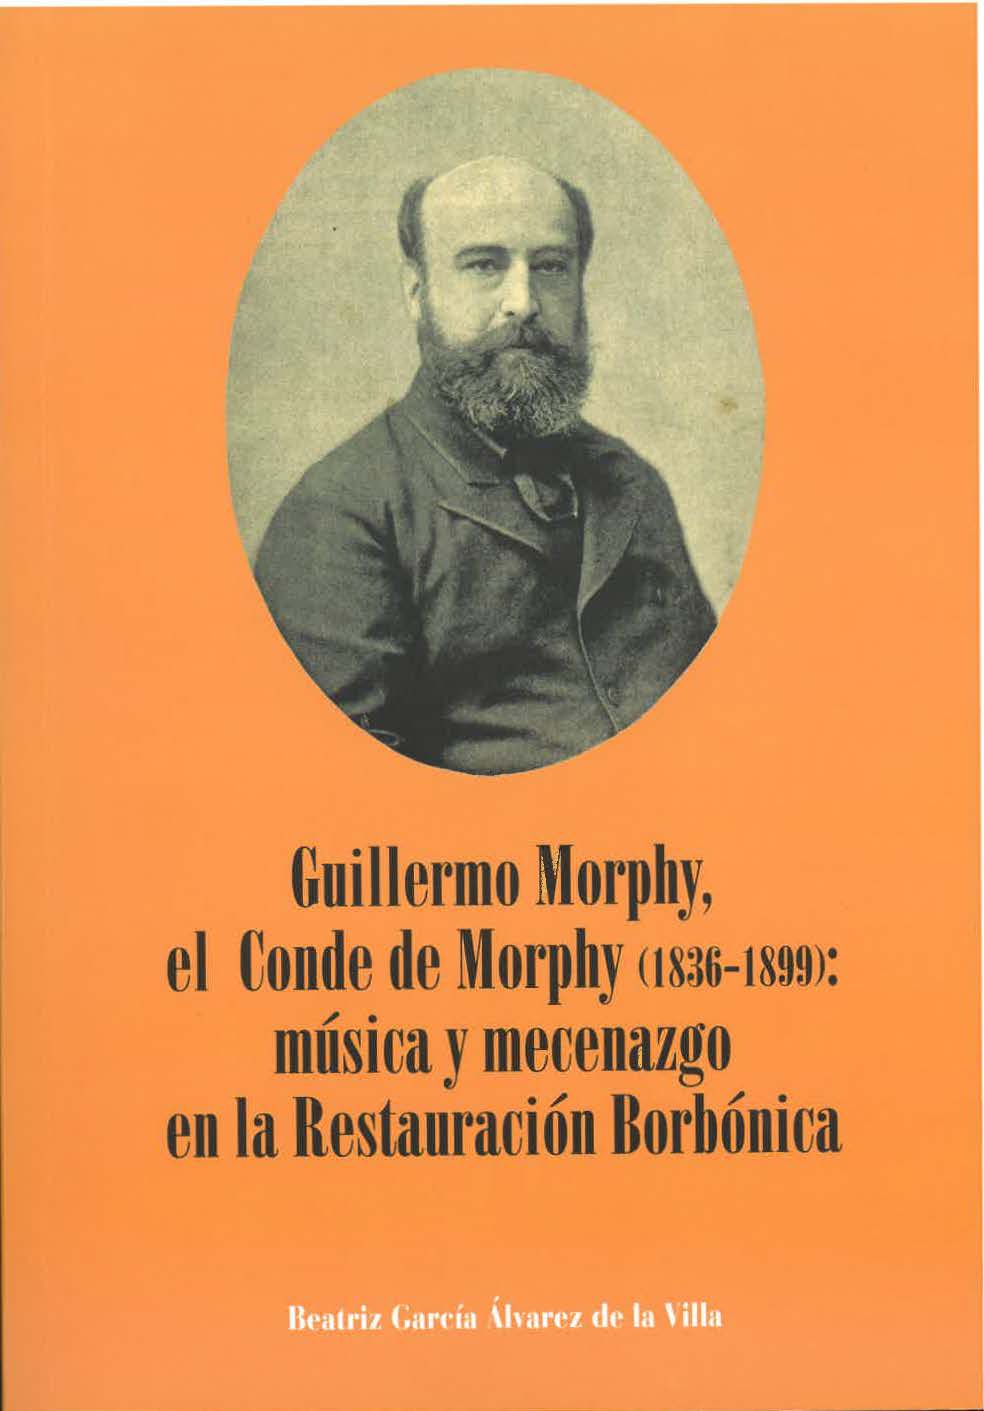 Guillermo Morphy, el Conde de Morphy (1836-1899): música y mecenazgo en la Restauración Borbónica